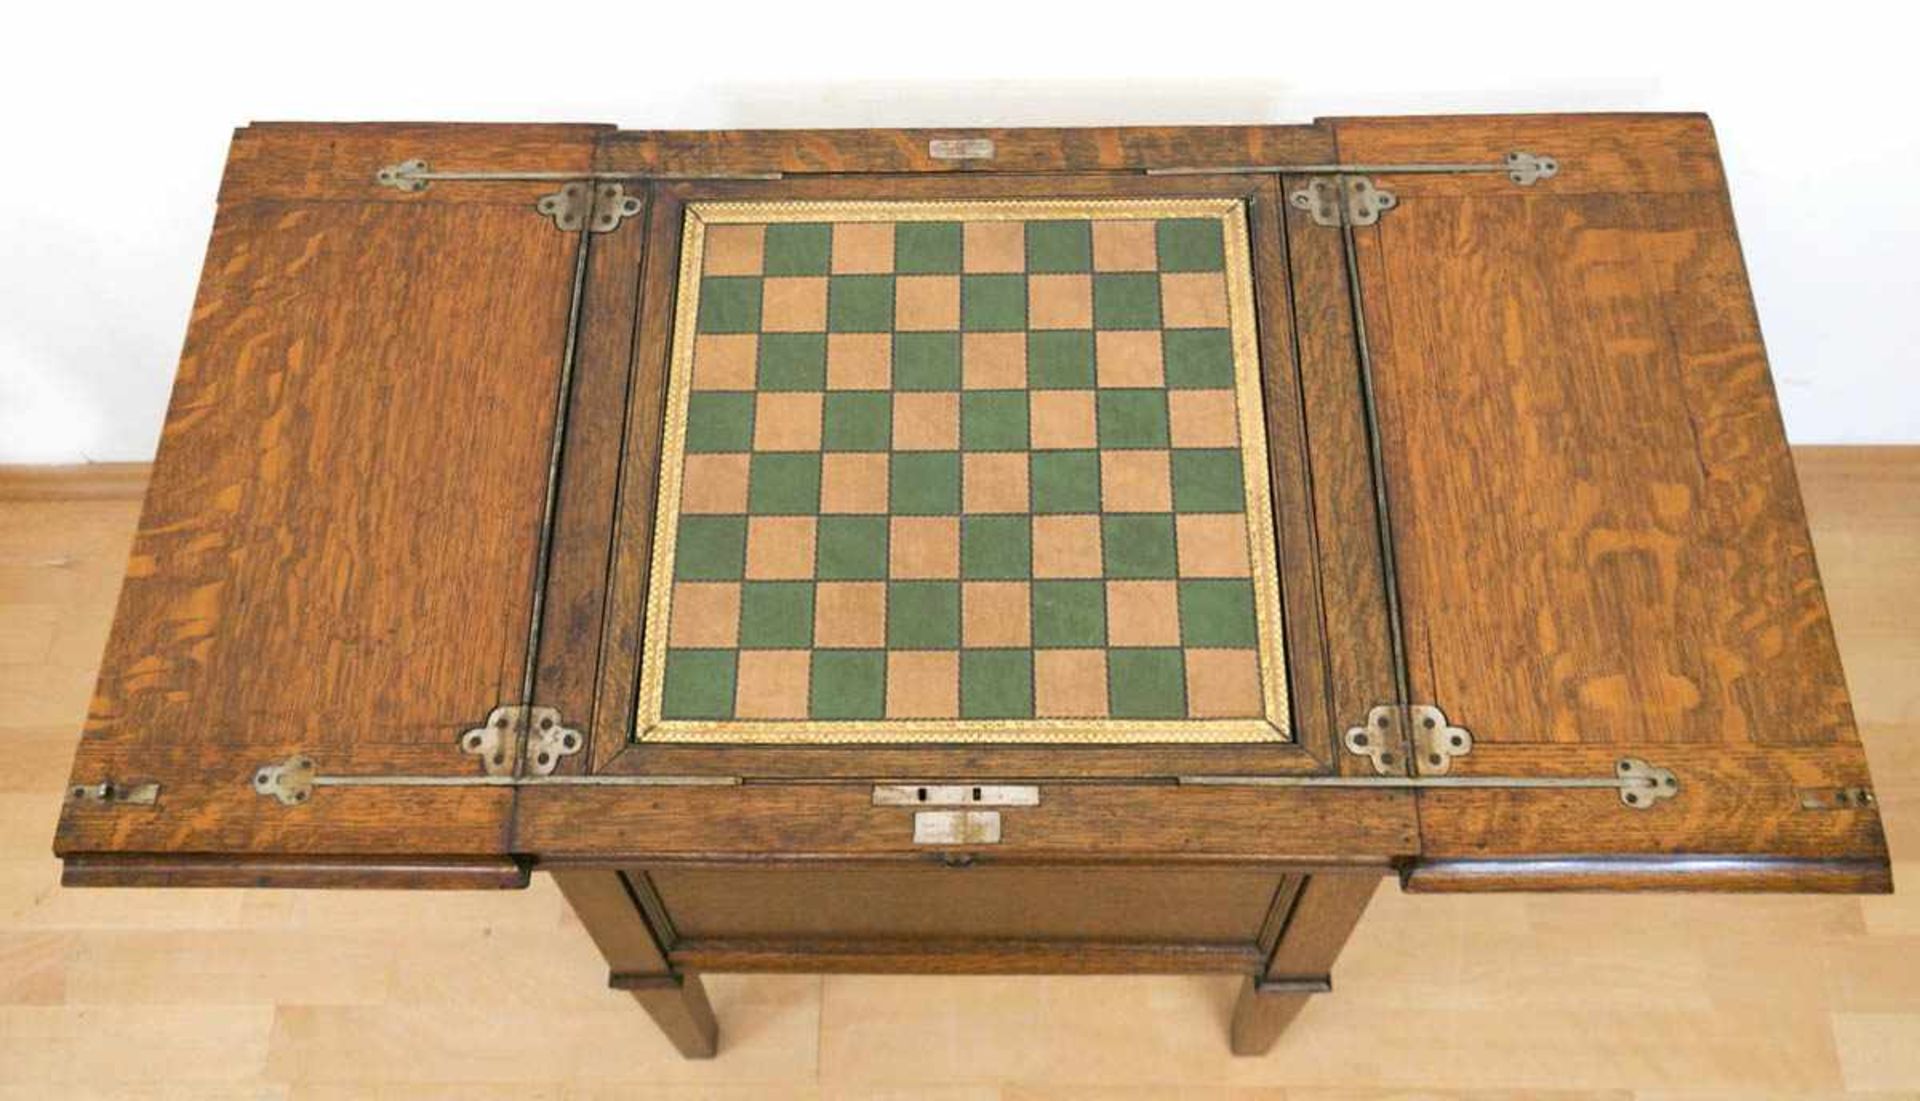 Patent-Spieltisch, England, Eiche, mittig mit Schachbrettmuster auf Ledereinlage, wirddurch